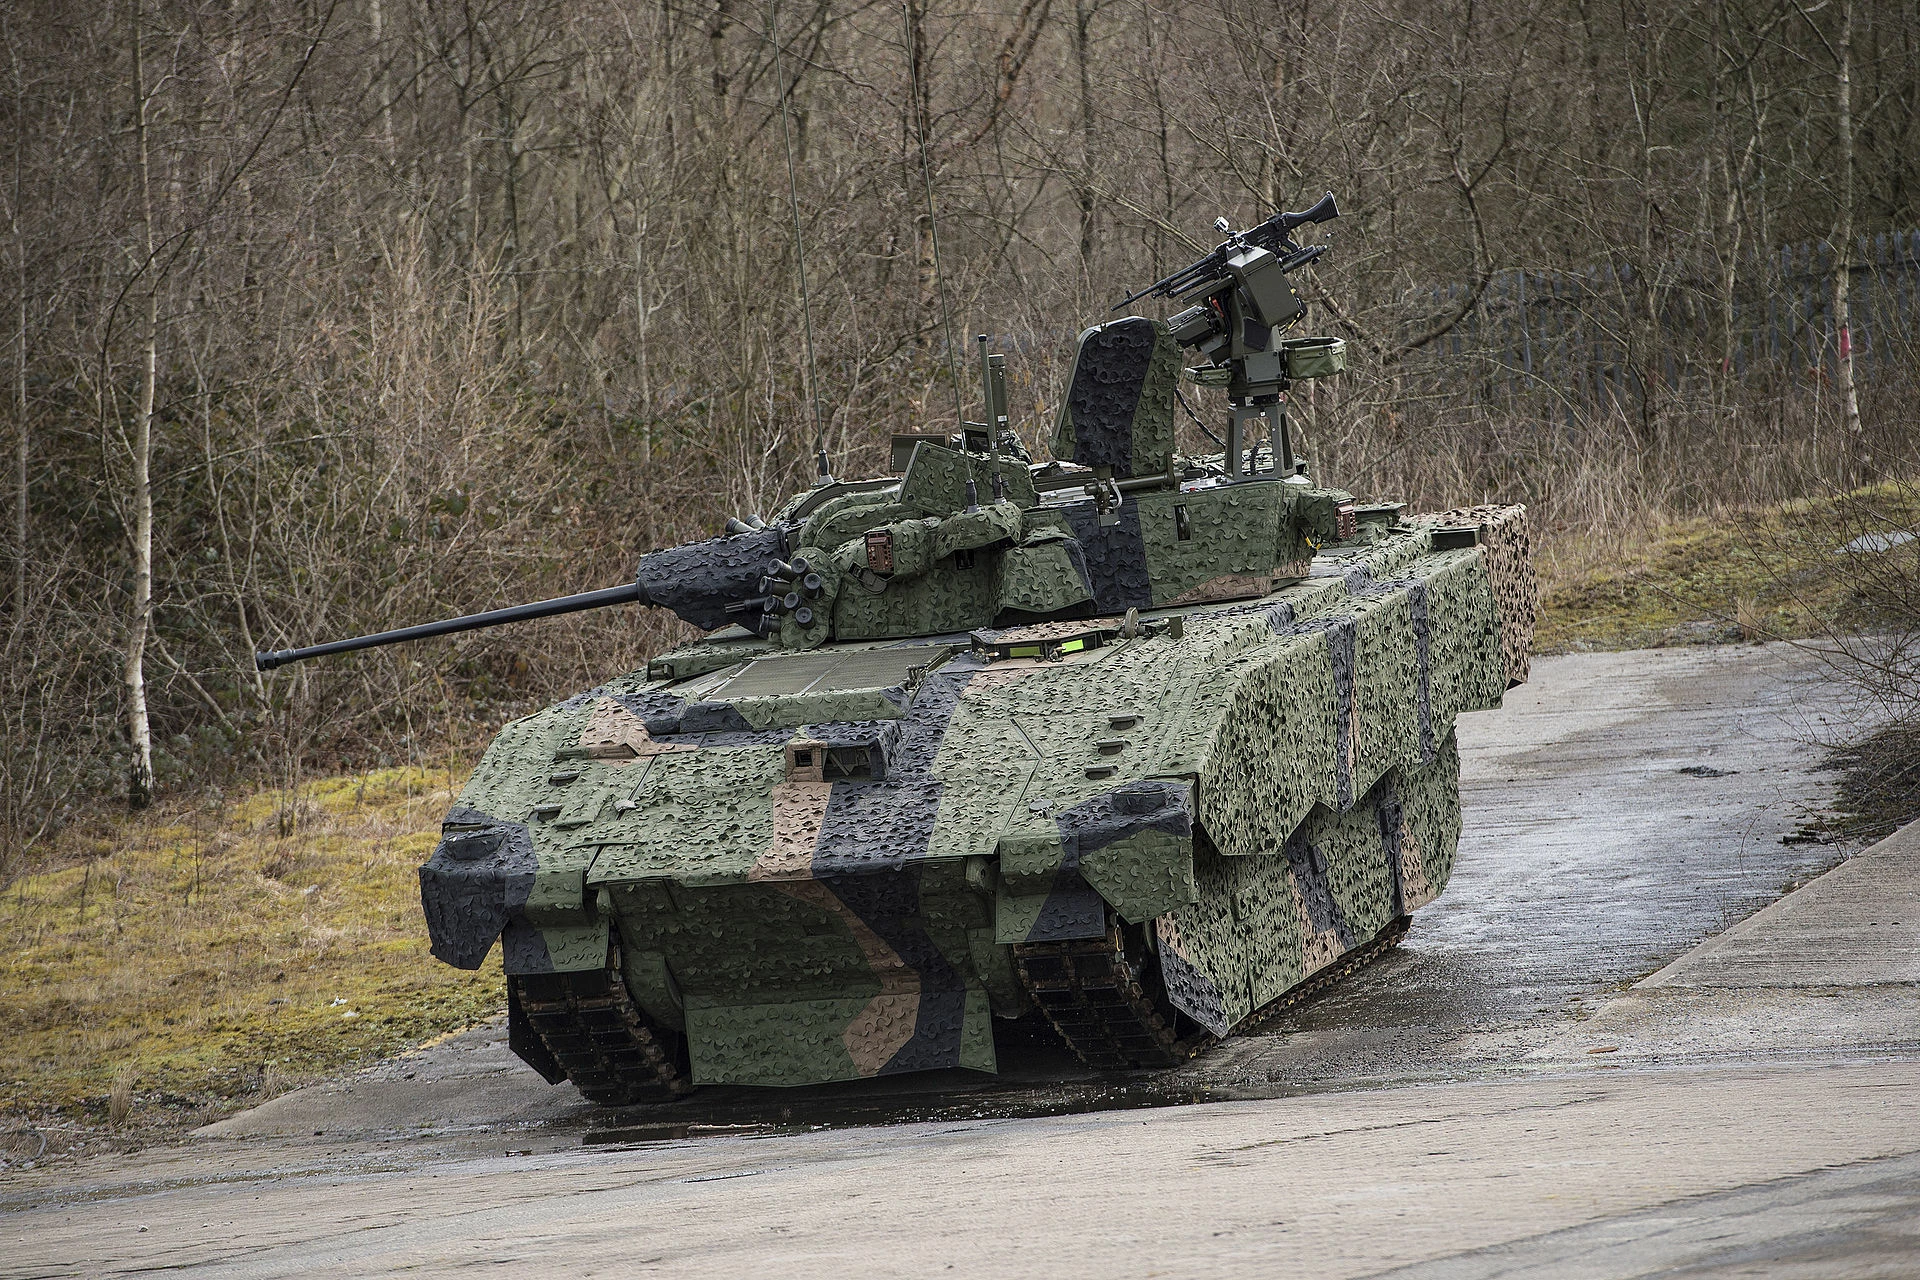 British Ajax fighting vehicle